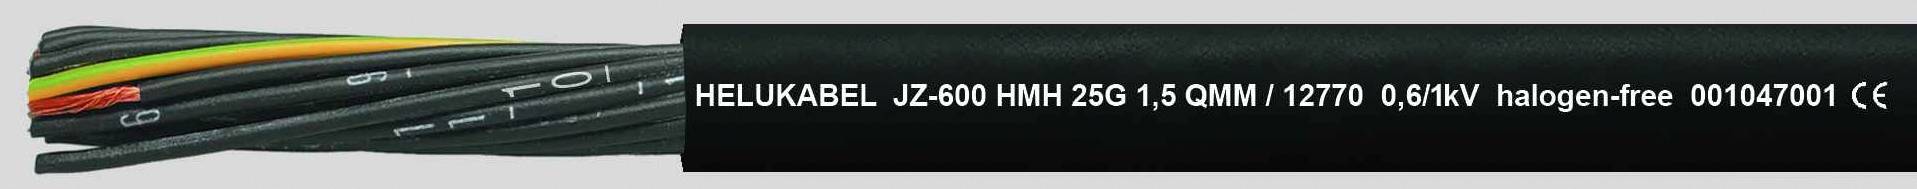 HELUKABEL HELU JZ-600 HMH 4G0,75 12738 Schwarz Steuerleitung halogenfrei